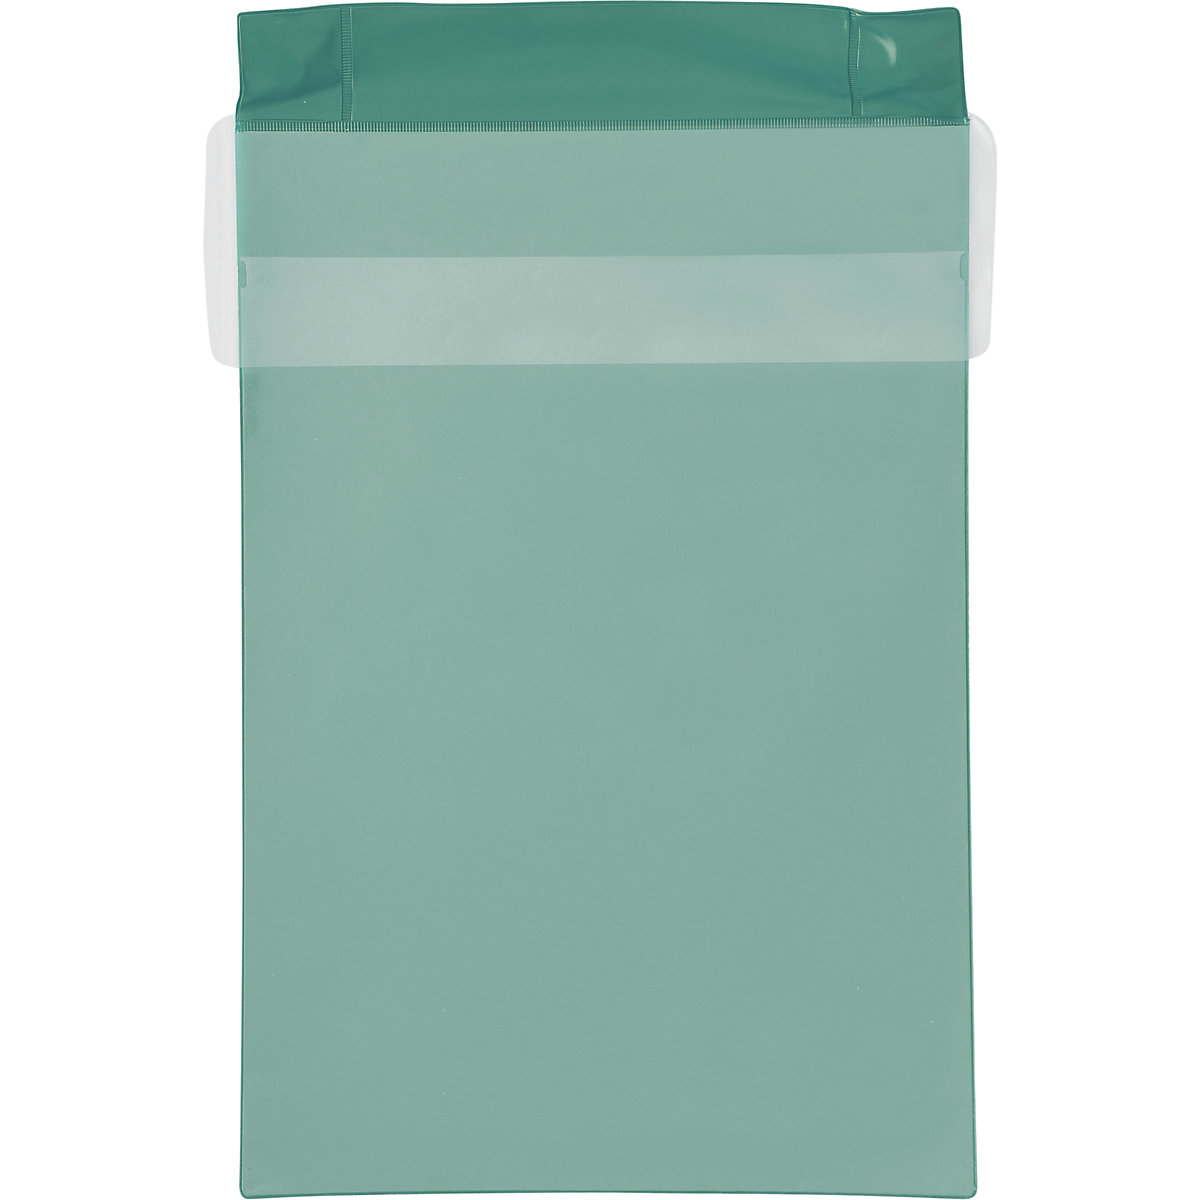 Magnetni džepovi od neodimija, uspravni format, s pokrovom za zaštitu od kiše, pak. 25 kom., u zelenoj boji, DIN A4, od 2 pak.-7